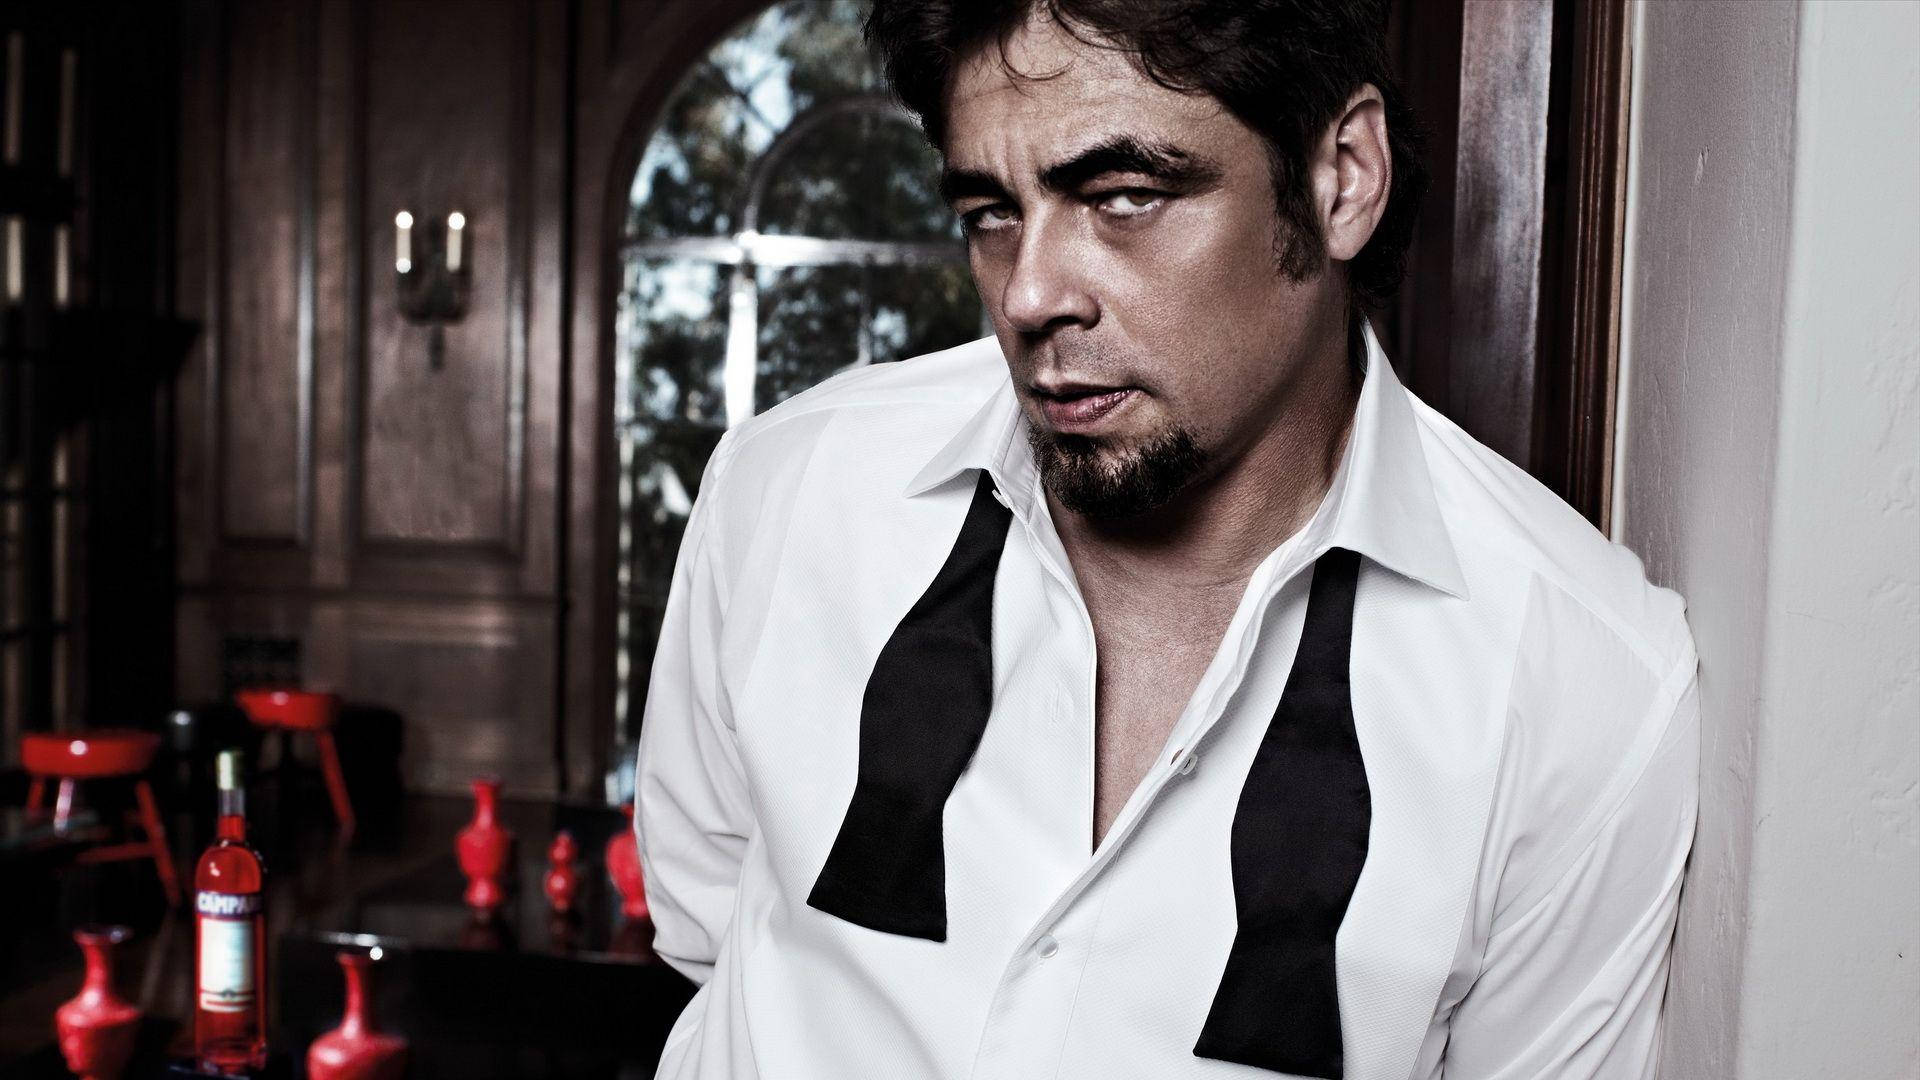 Benicio Del Toro The Red Affair Back Cover Wallpaper